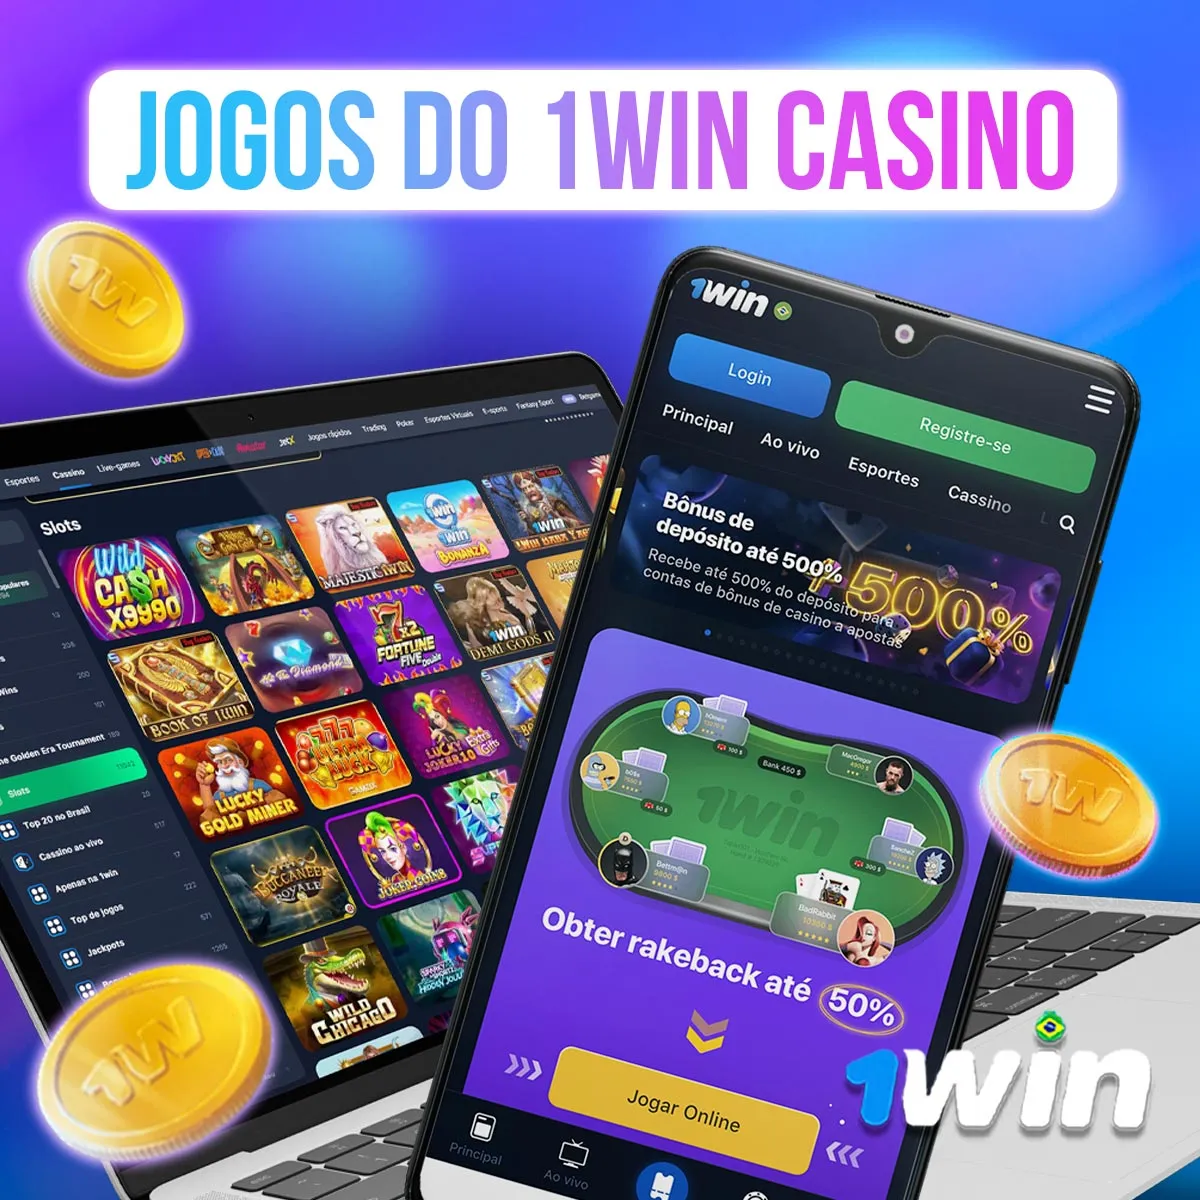 Jogos de cassino da casa de apostas 1win no mercado brasileiro